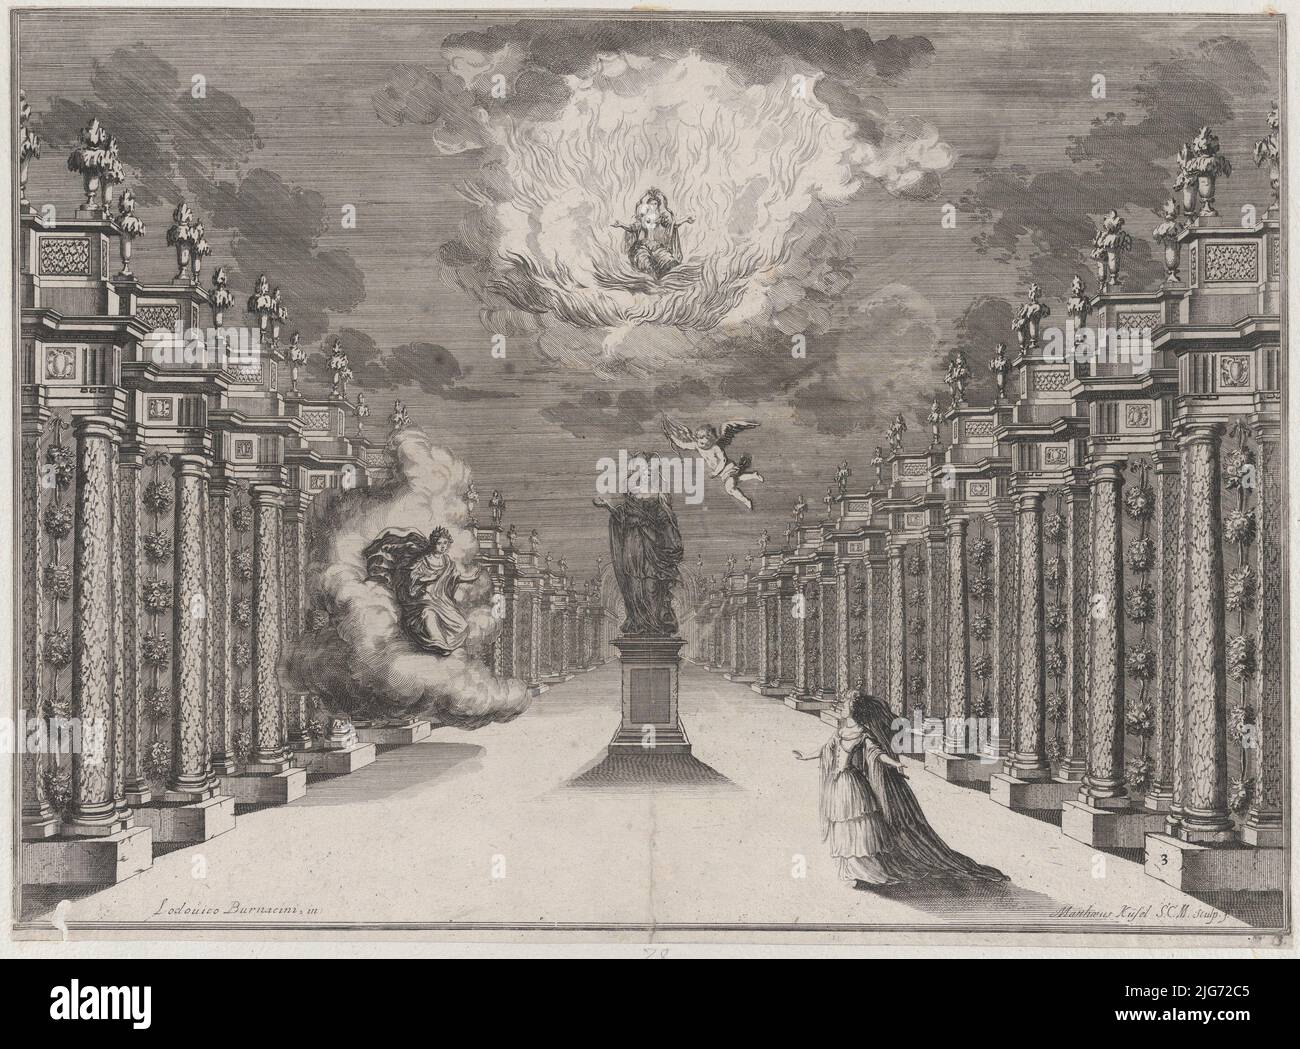 Una mujer de pie en el lado derecho de una carretera bordeada de columnas; en el centro una estatua de una hembra con cupido volando cerca; a la izquierda, una mujer emergiendo de las nubes mientras otra se sienta entre las llamas arriba; diseño del conjunto de 'Il Fuoco Eterno', 1674. Foto de stock